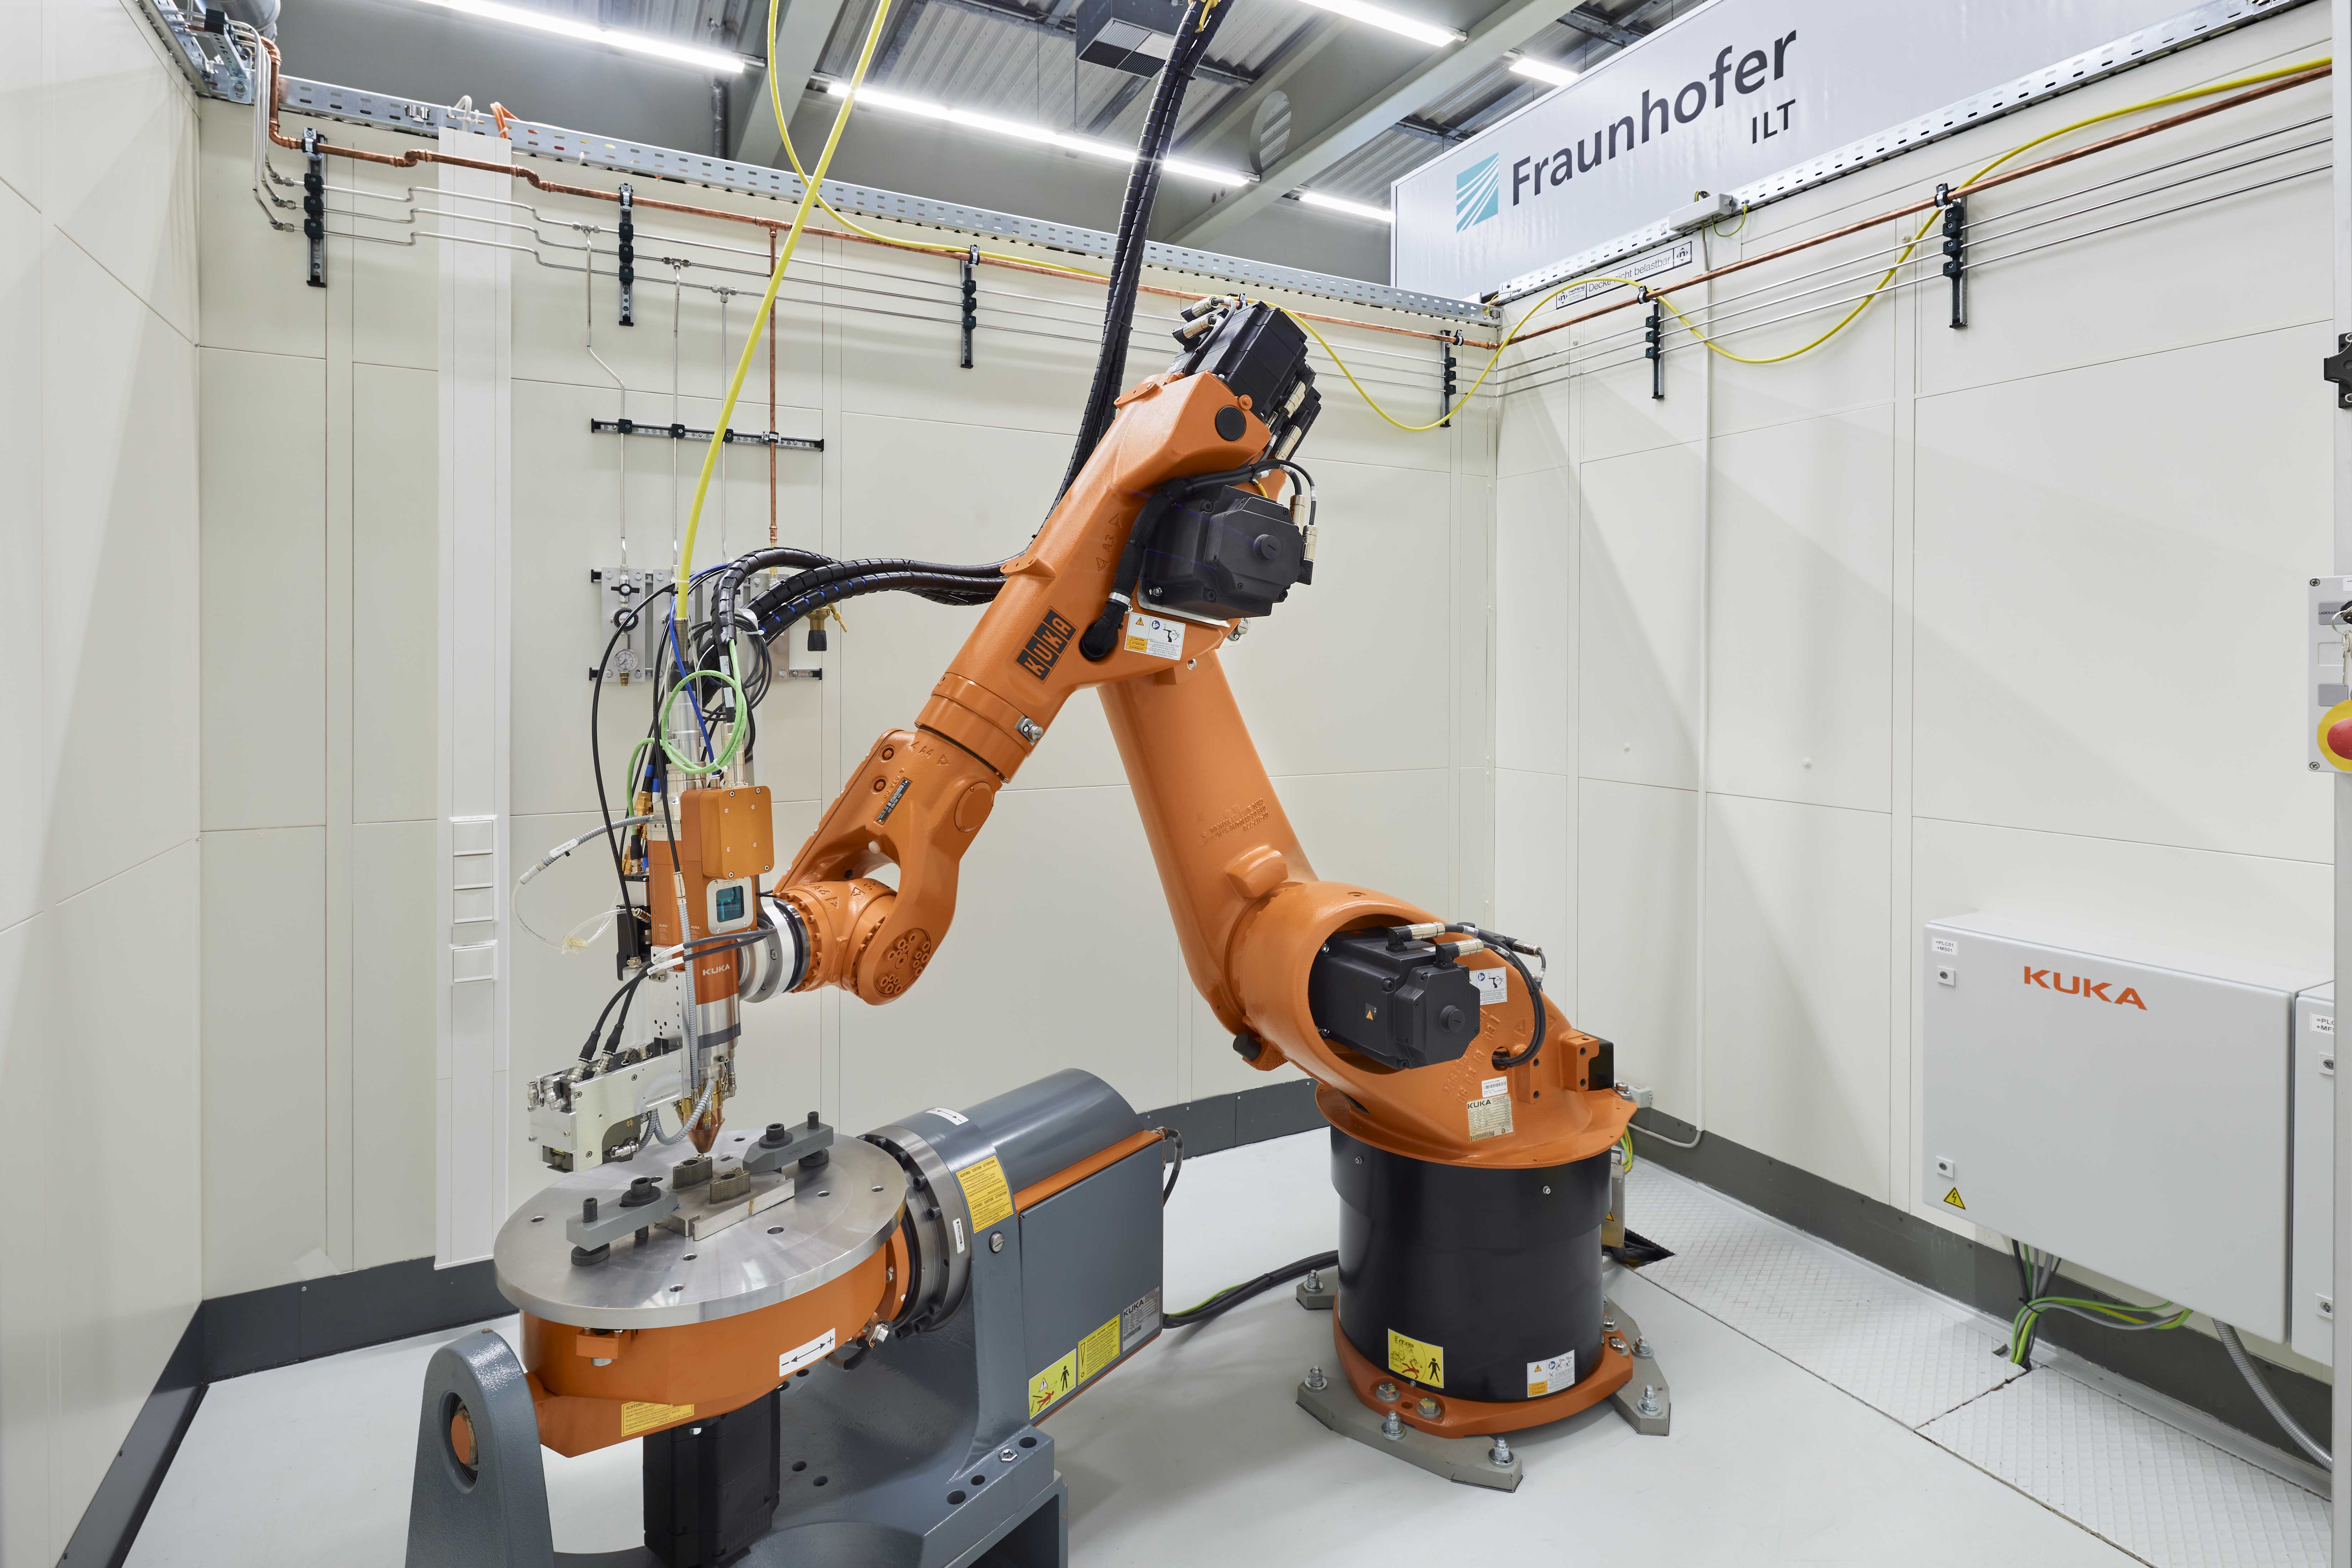 Chance für Mittelständler: Mit zusätzlicher finanzieller Unterstützung durch das BMBF entstand am Fraunhofer ILT eine preisgünstigere Variante der ProLMD-Roboterzelle für die hybrid-additive Fertigung mittels Laserauftragschweißen, angepasst an die Bedürfnisse kleiner und mittlerer Unternehmen.